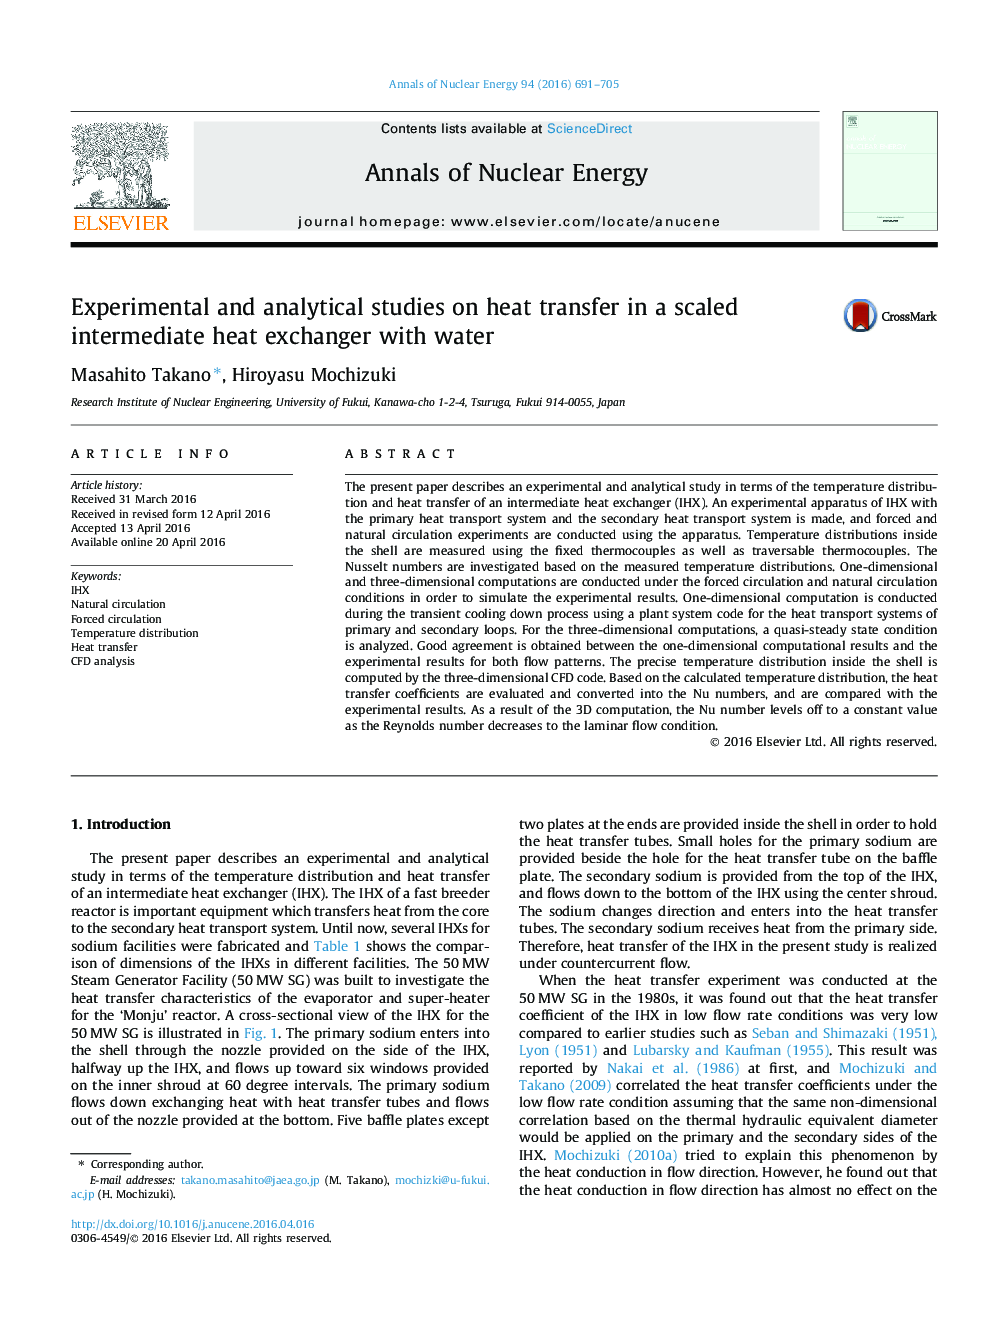 مطالعات تجربی و تحلیلی در مورد انتقال گرما در یک مبدل حرارتی متوسط ​​با آب 